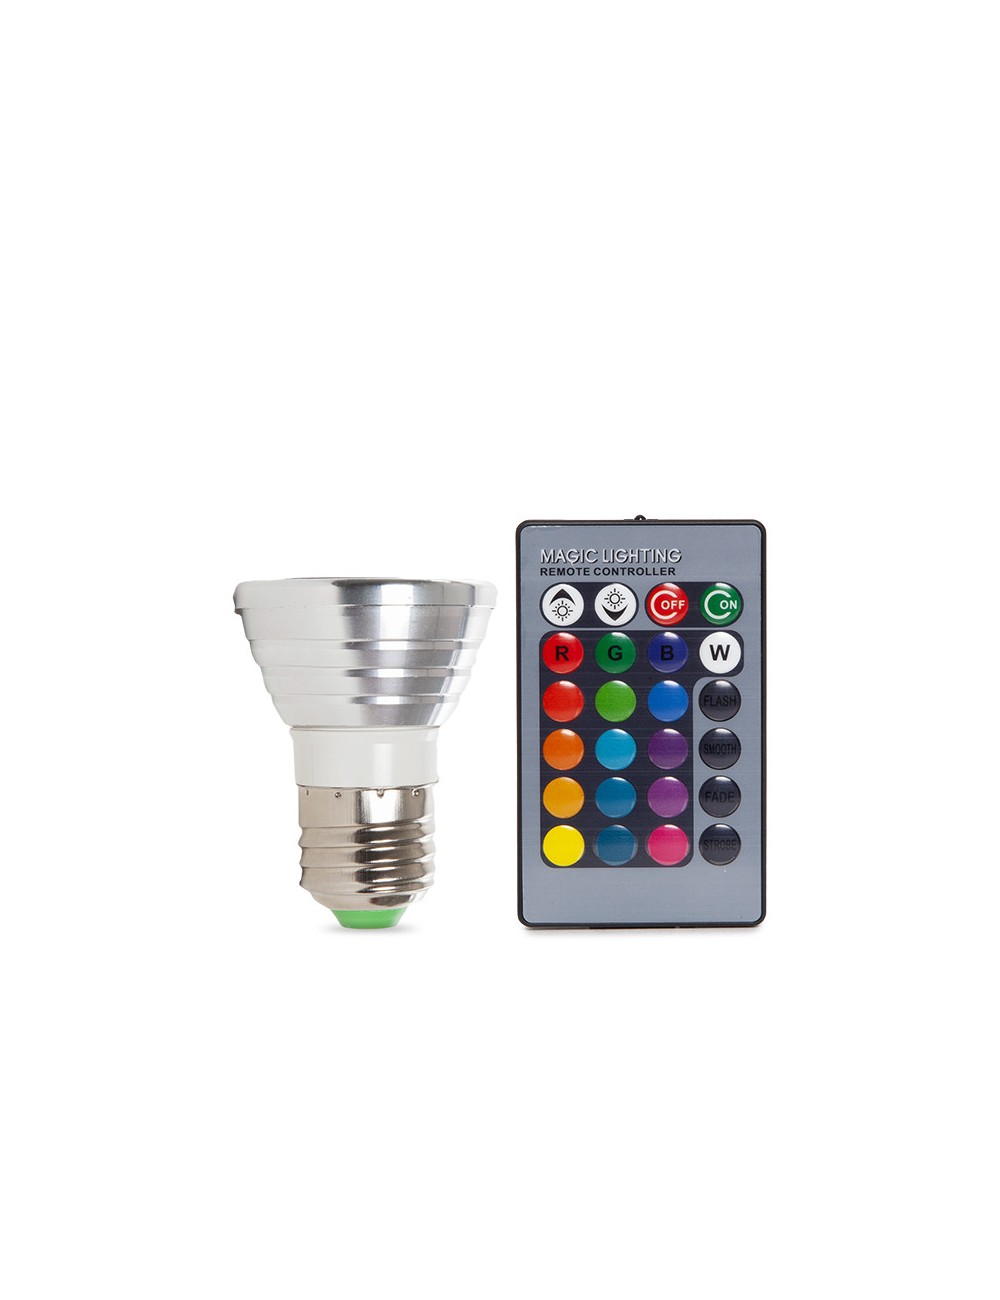 Ampoule LED E27 3W RVB Télécommande 40.000H [PL187220-E27]